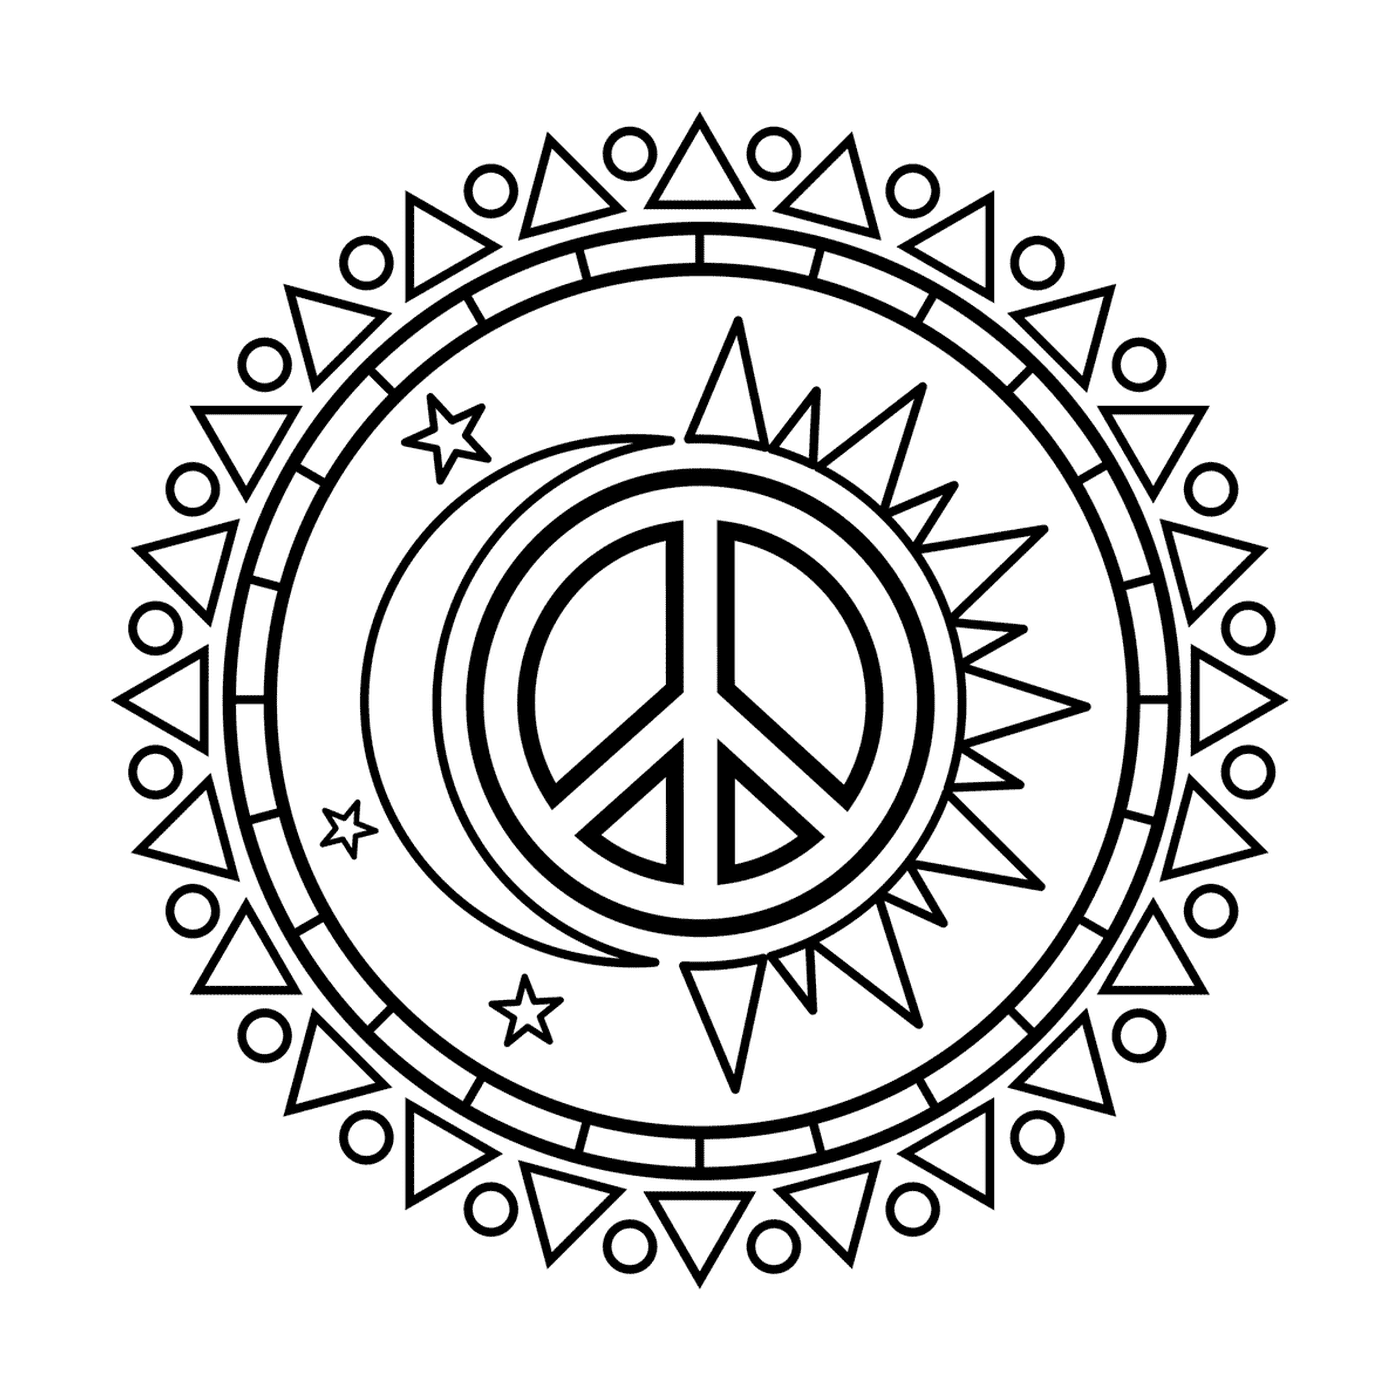  Sole e luna con simbolo di pace 